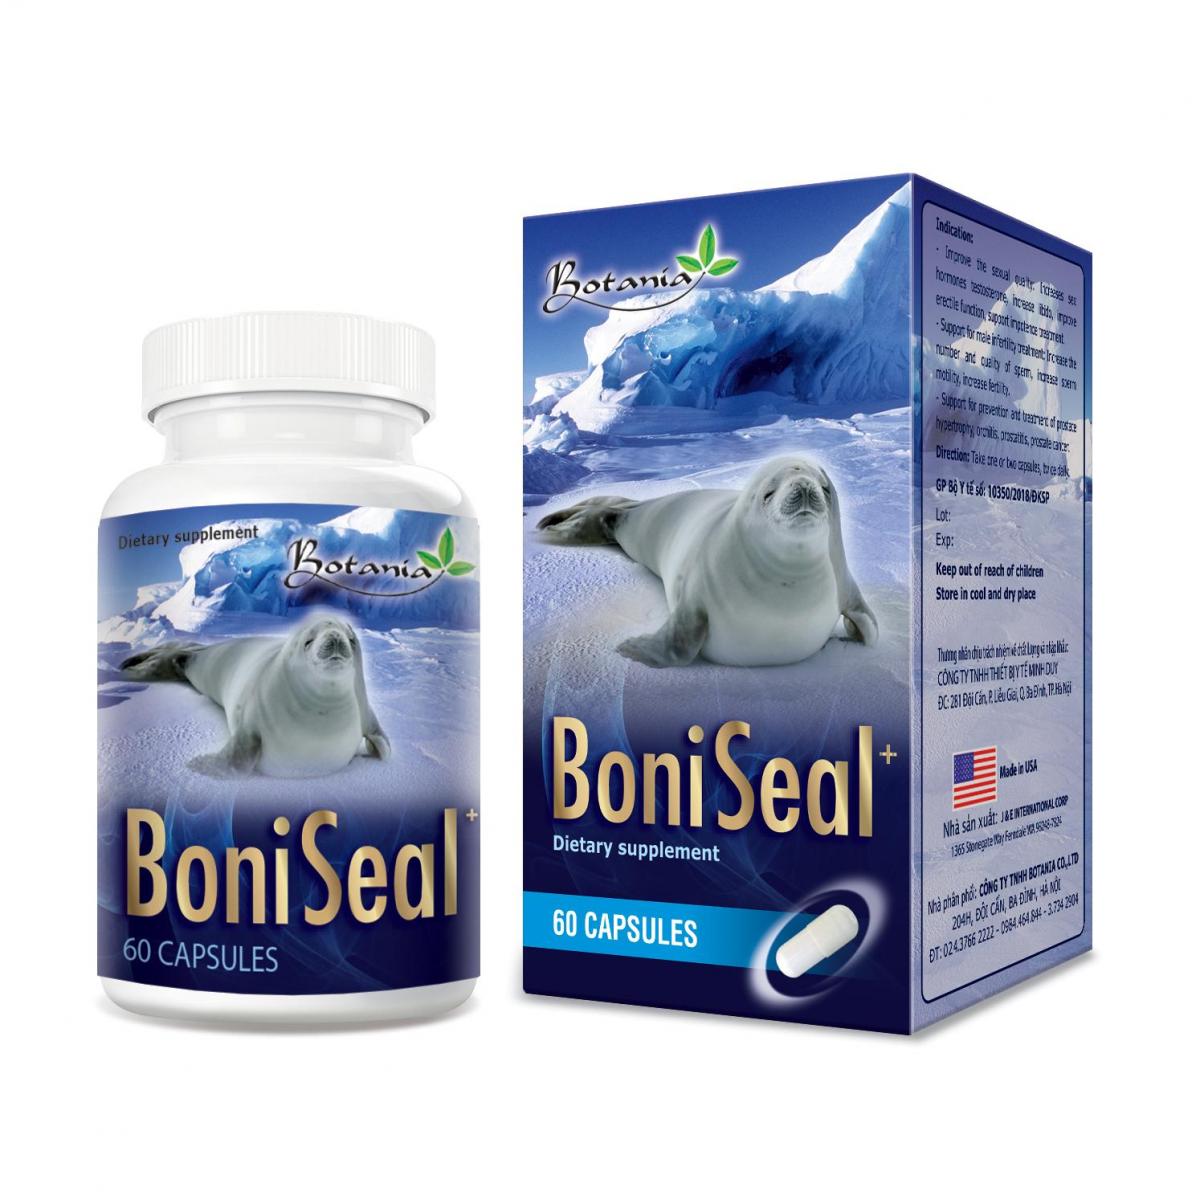 BoniSeal + - Sản phẩm hoàn hảo cải thiện tình trạng xuất tinh sớm do yếu sinh lý